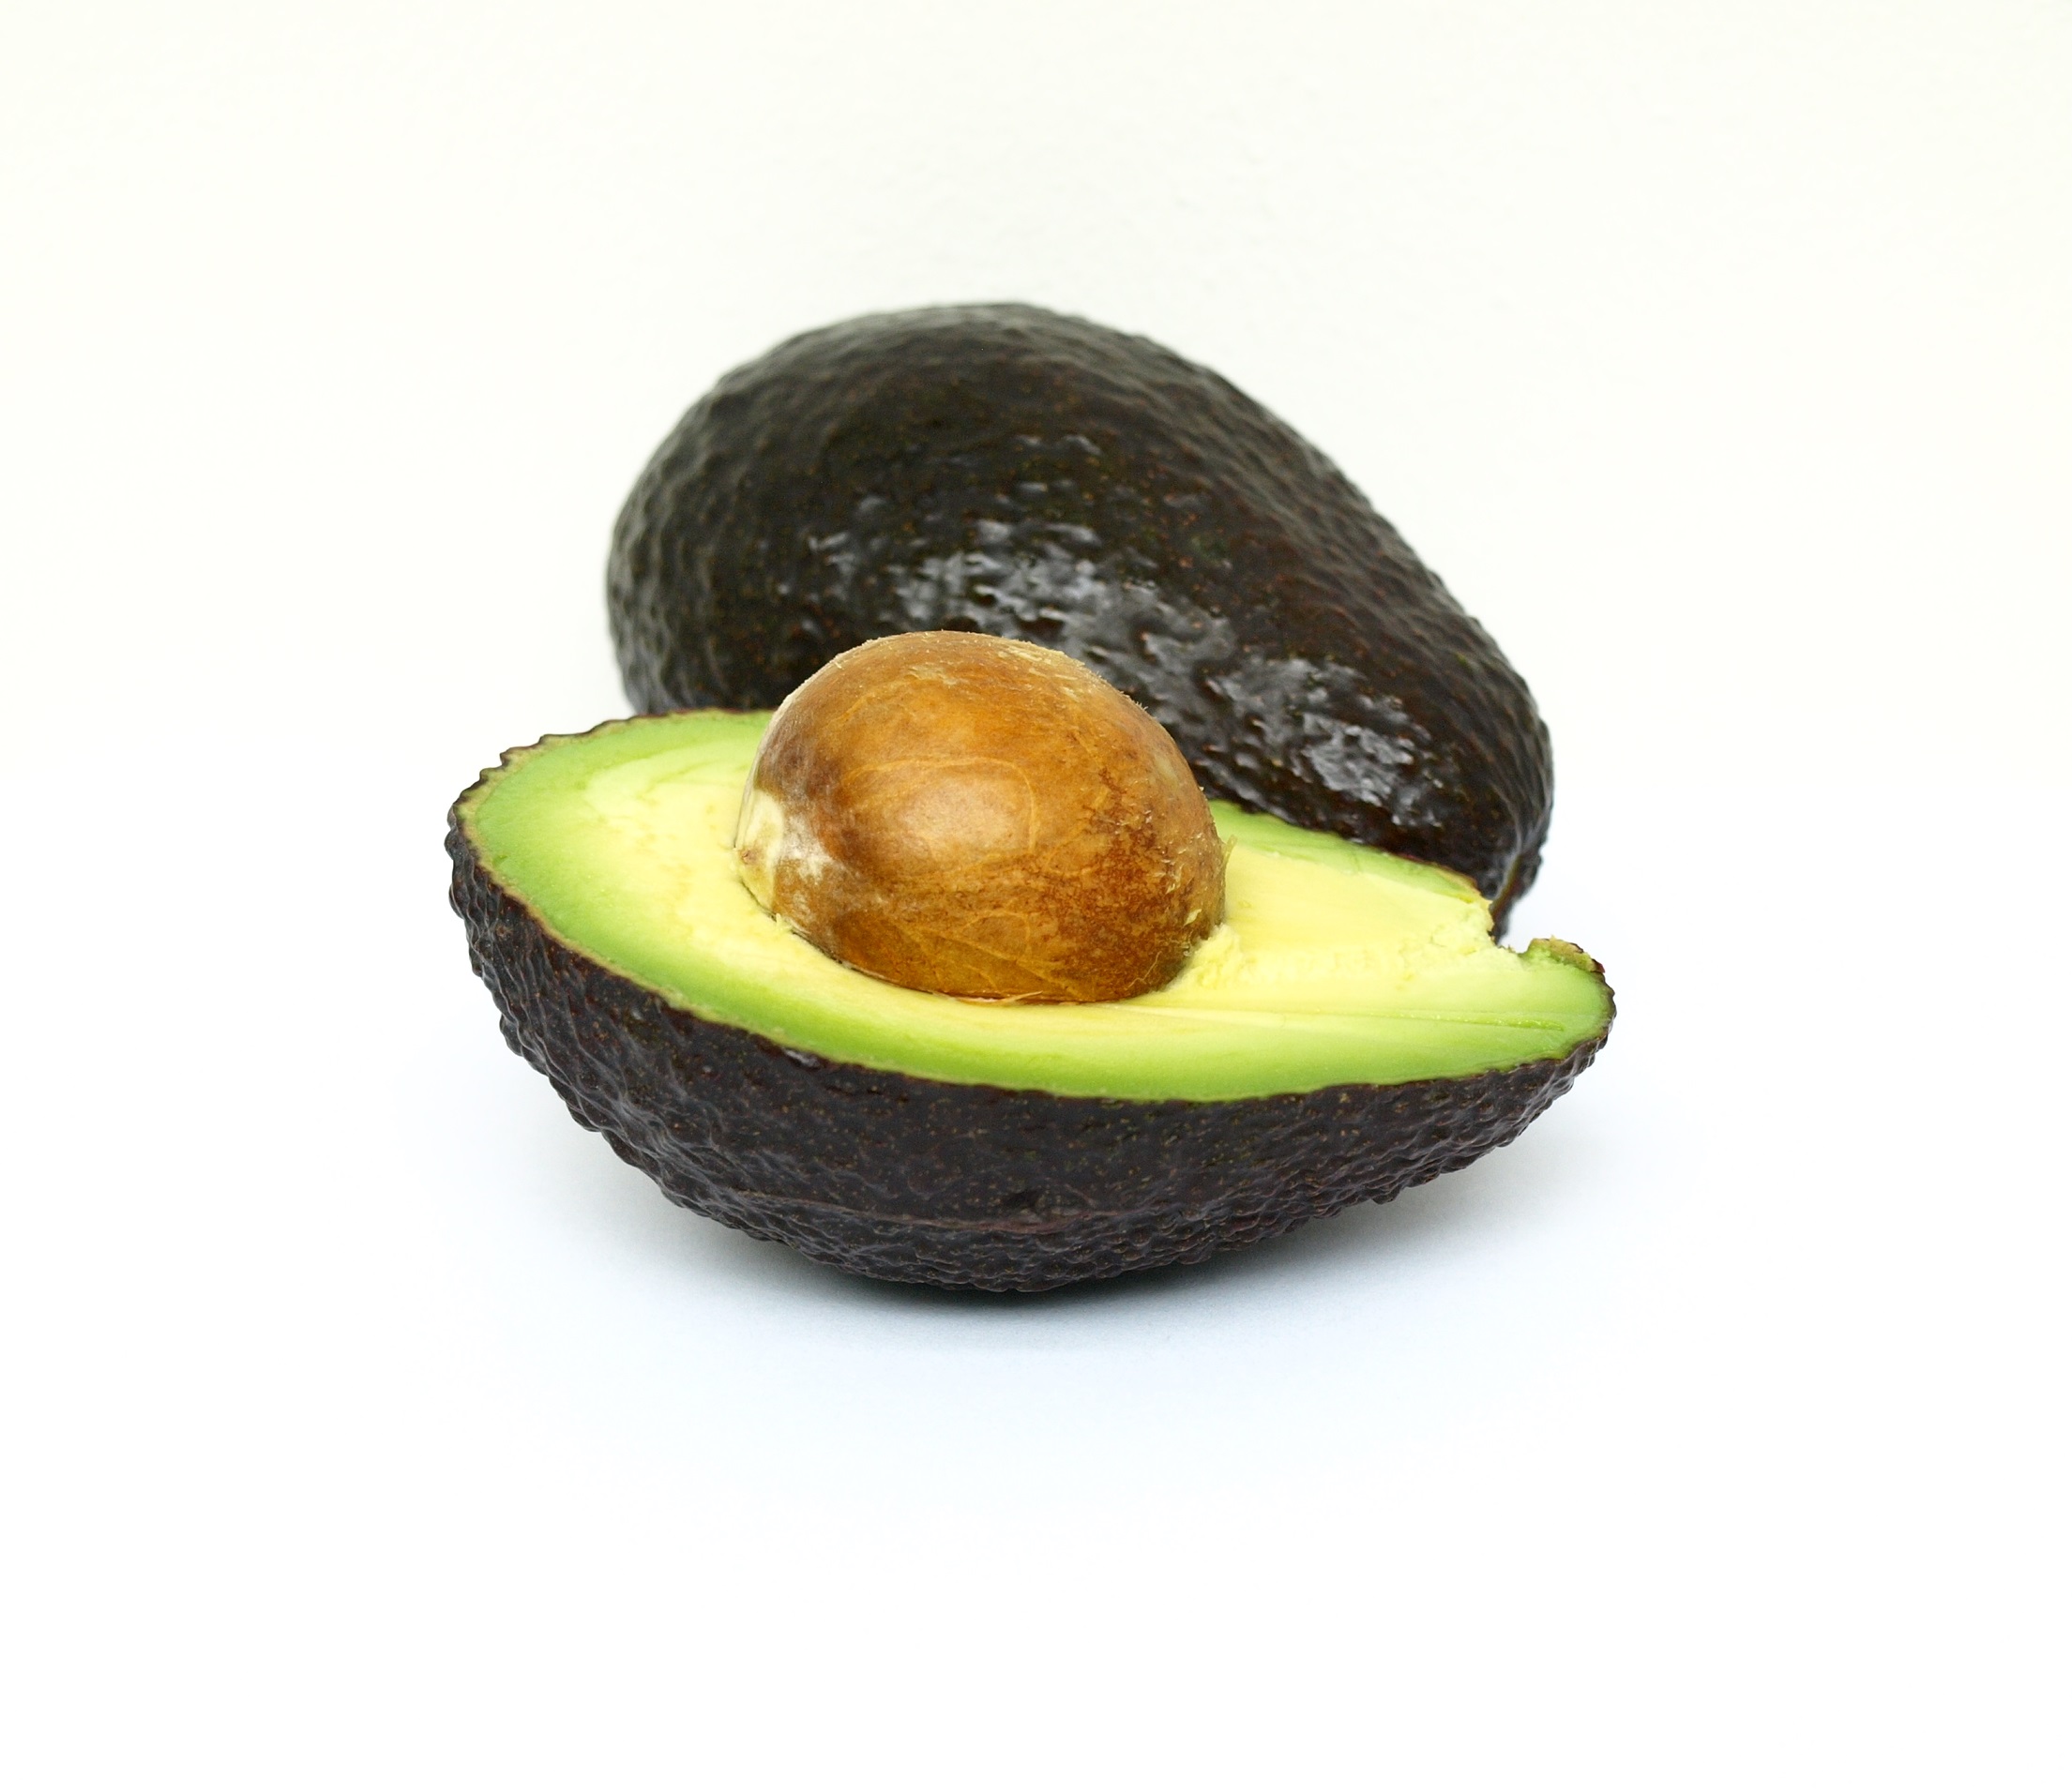 Are avocados healthy?